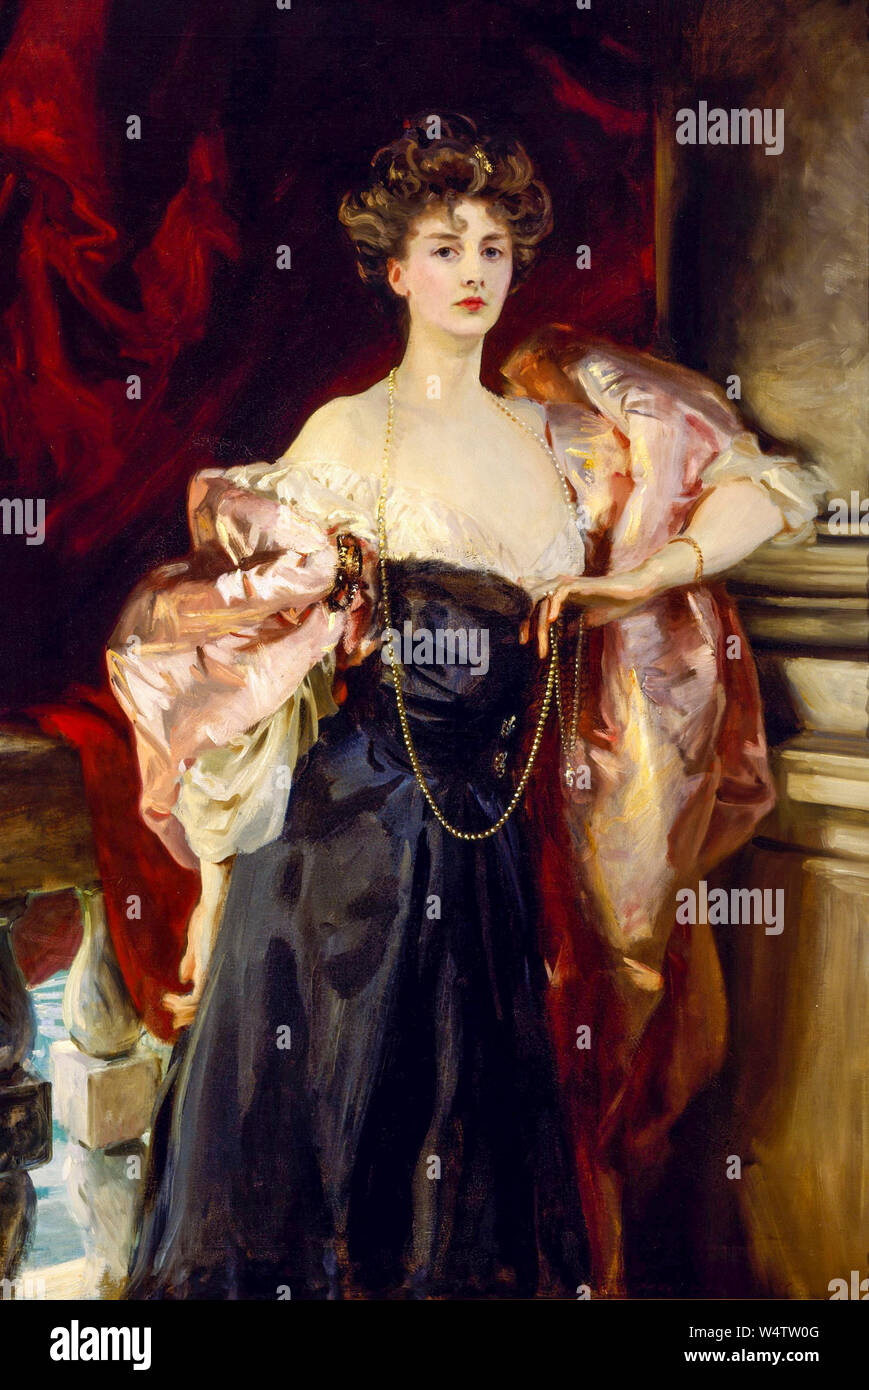 John Singer Sargent, Lady Helen Vincent, Viscountess d’Abernon , portrait painting, 1904 Stock Photo